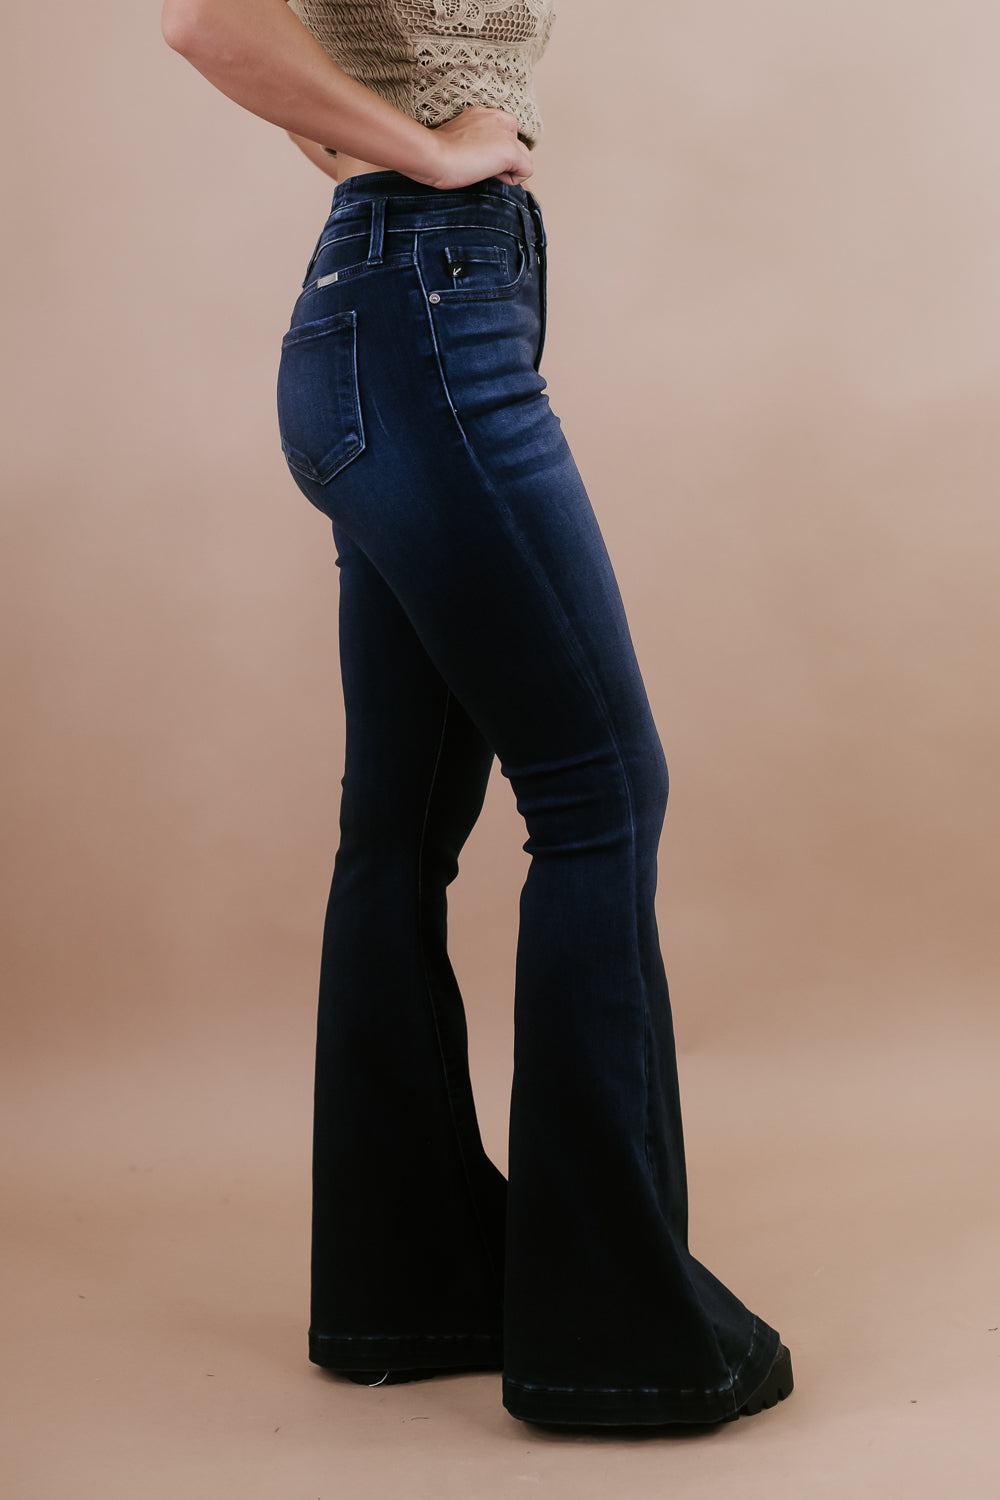 KanCan High Rise Super Flare Stretch Jean - Women's Jeans in Dark